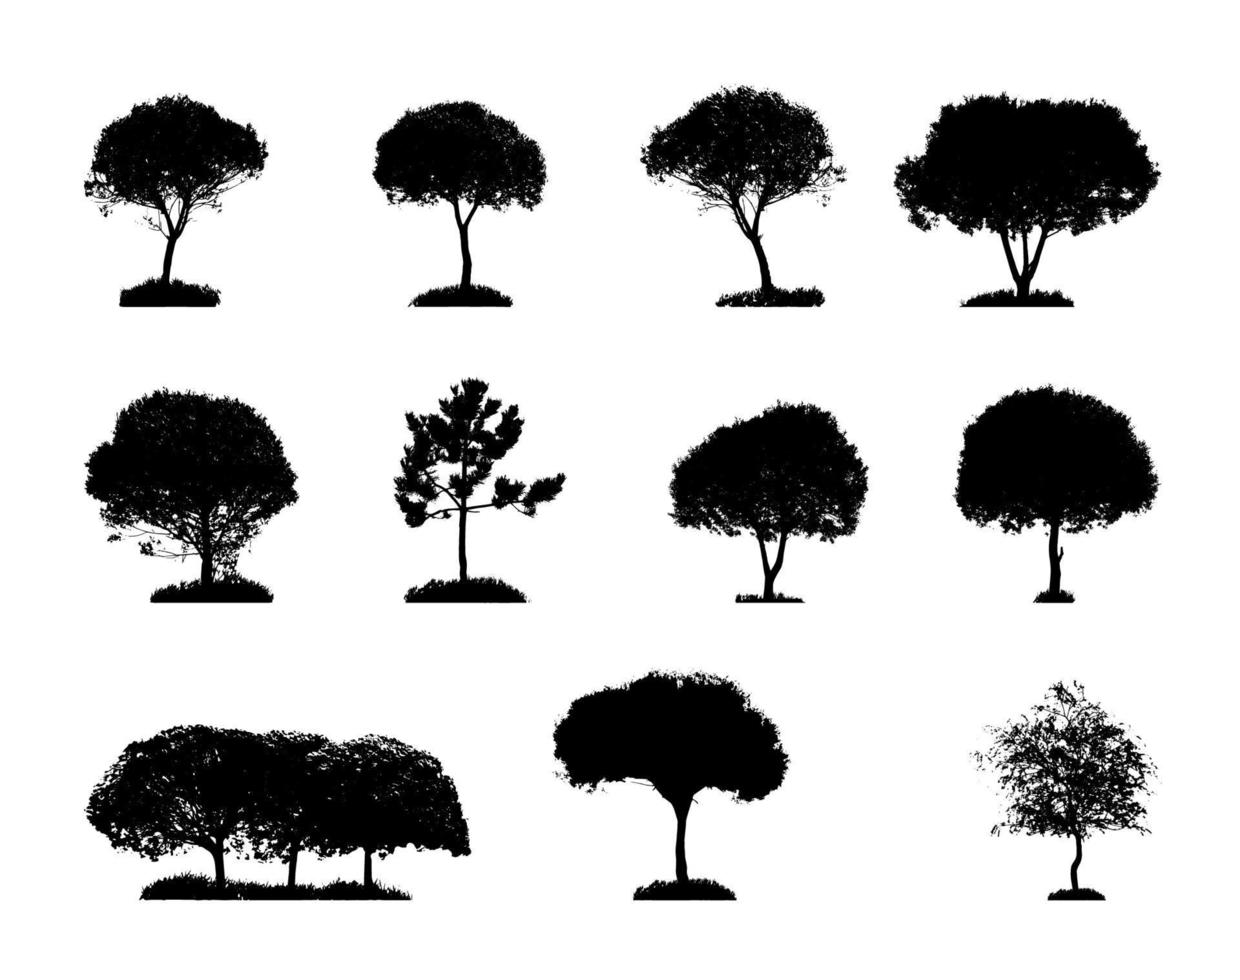 sagoma di albero isolato su sfondo bianco. illustrazione vettoriale